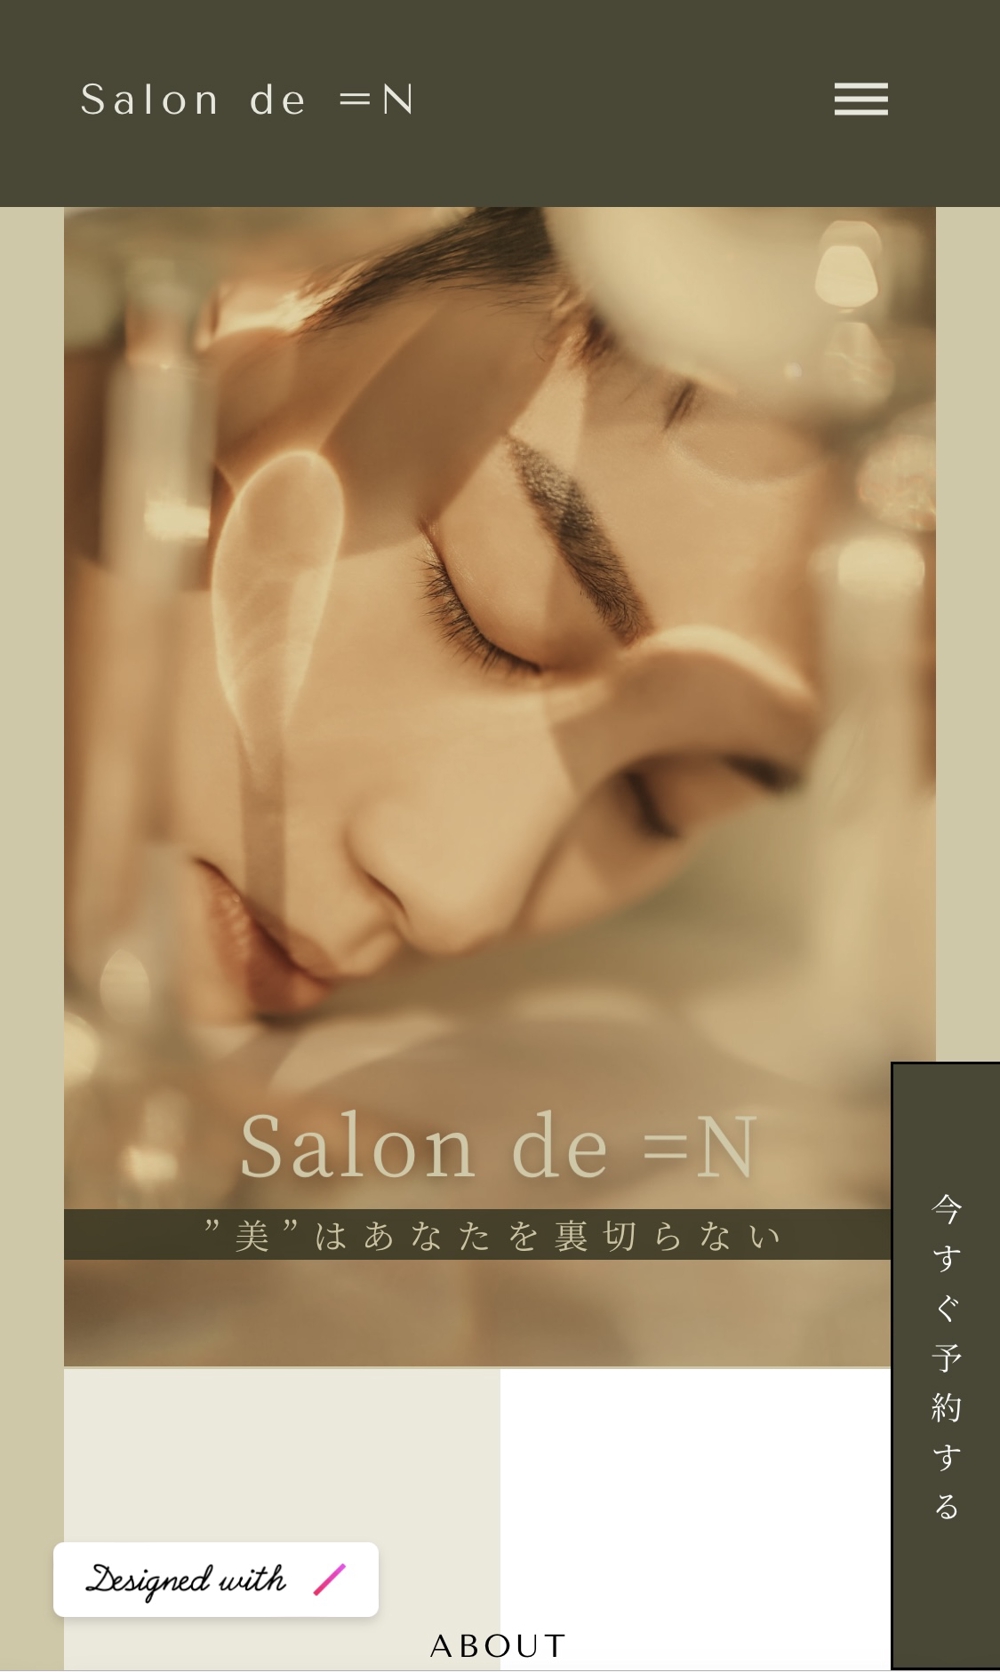 salon de =N | 本質的な美を追求するエステサロン